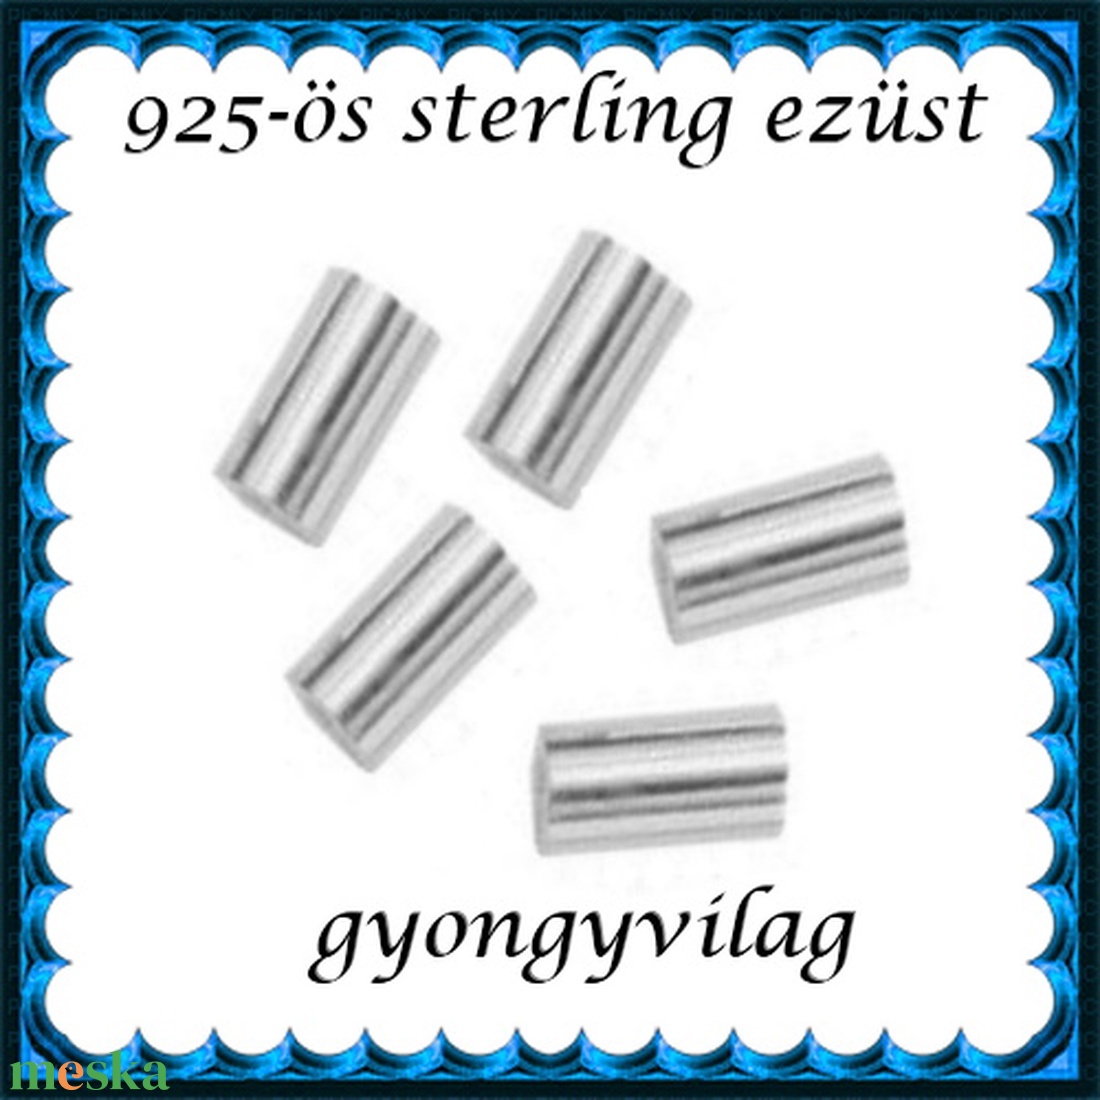 925-ös sterling ezüst ékszerkellék: köztes/gyöngy/díszitőelem EKÖ 19-3x2 - gyöngy, ékszerkellék - egyéb alkatrész - Meska.hu